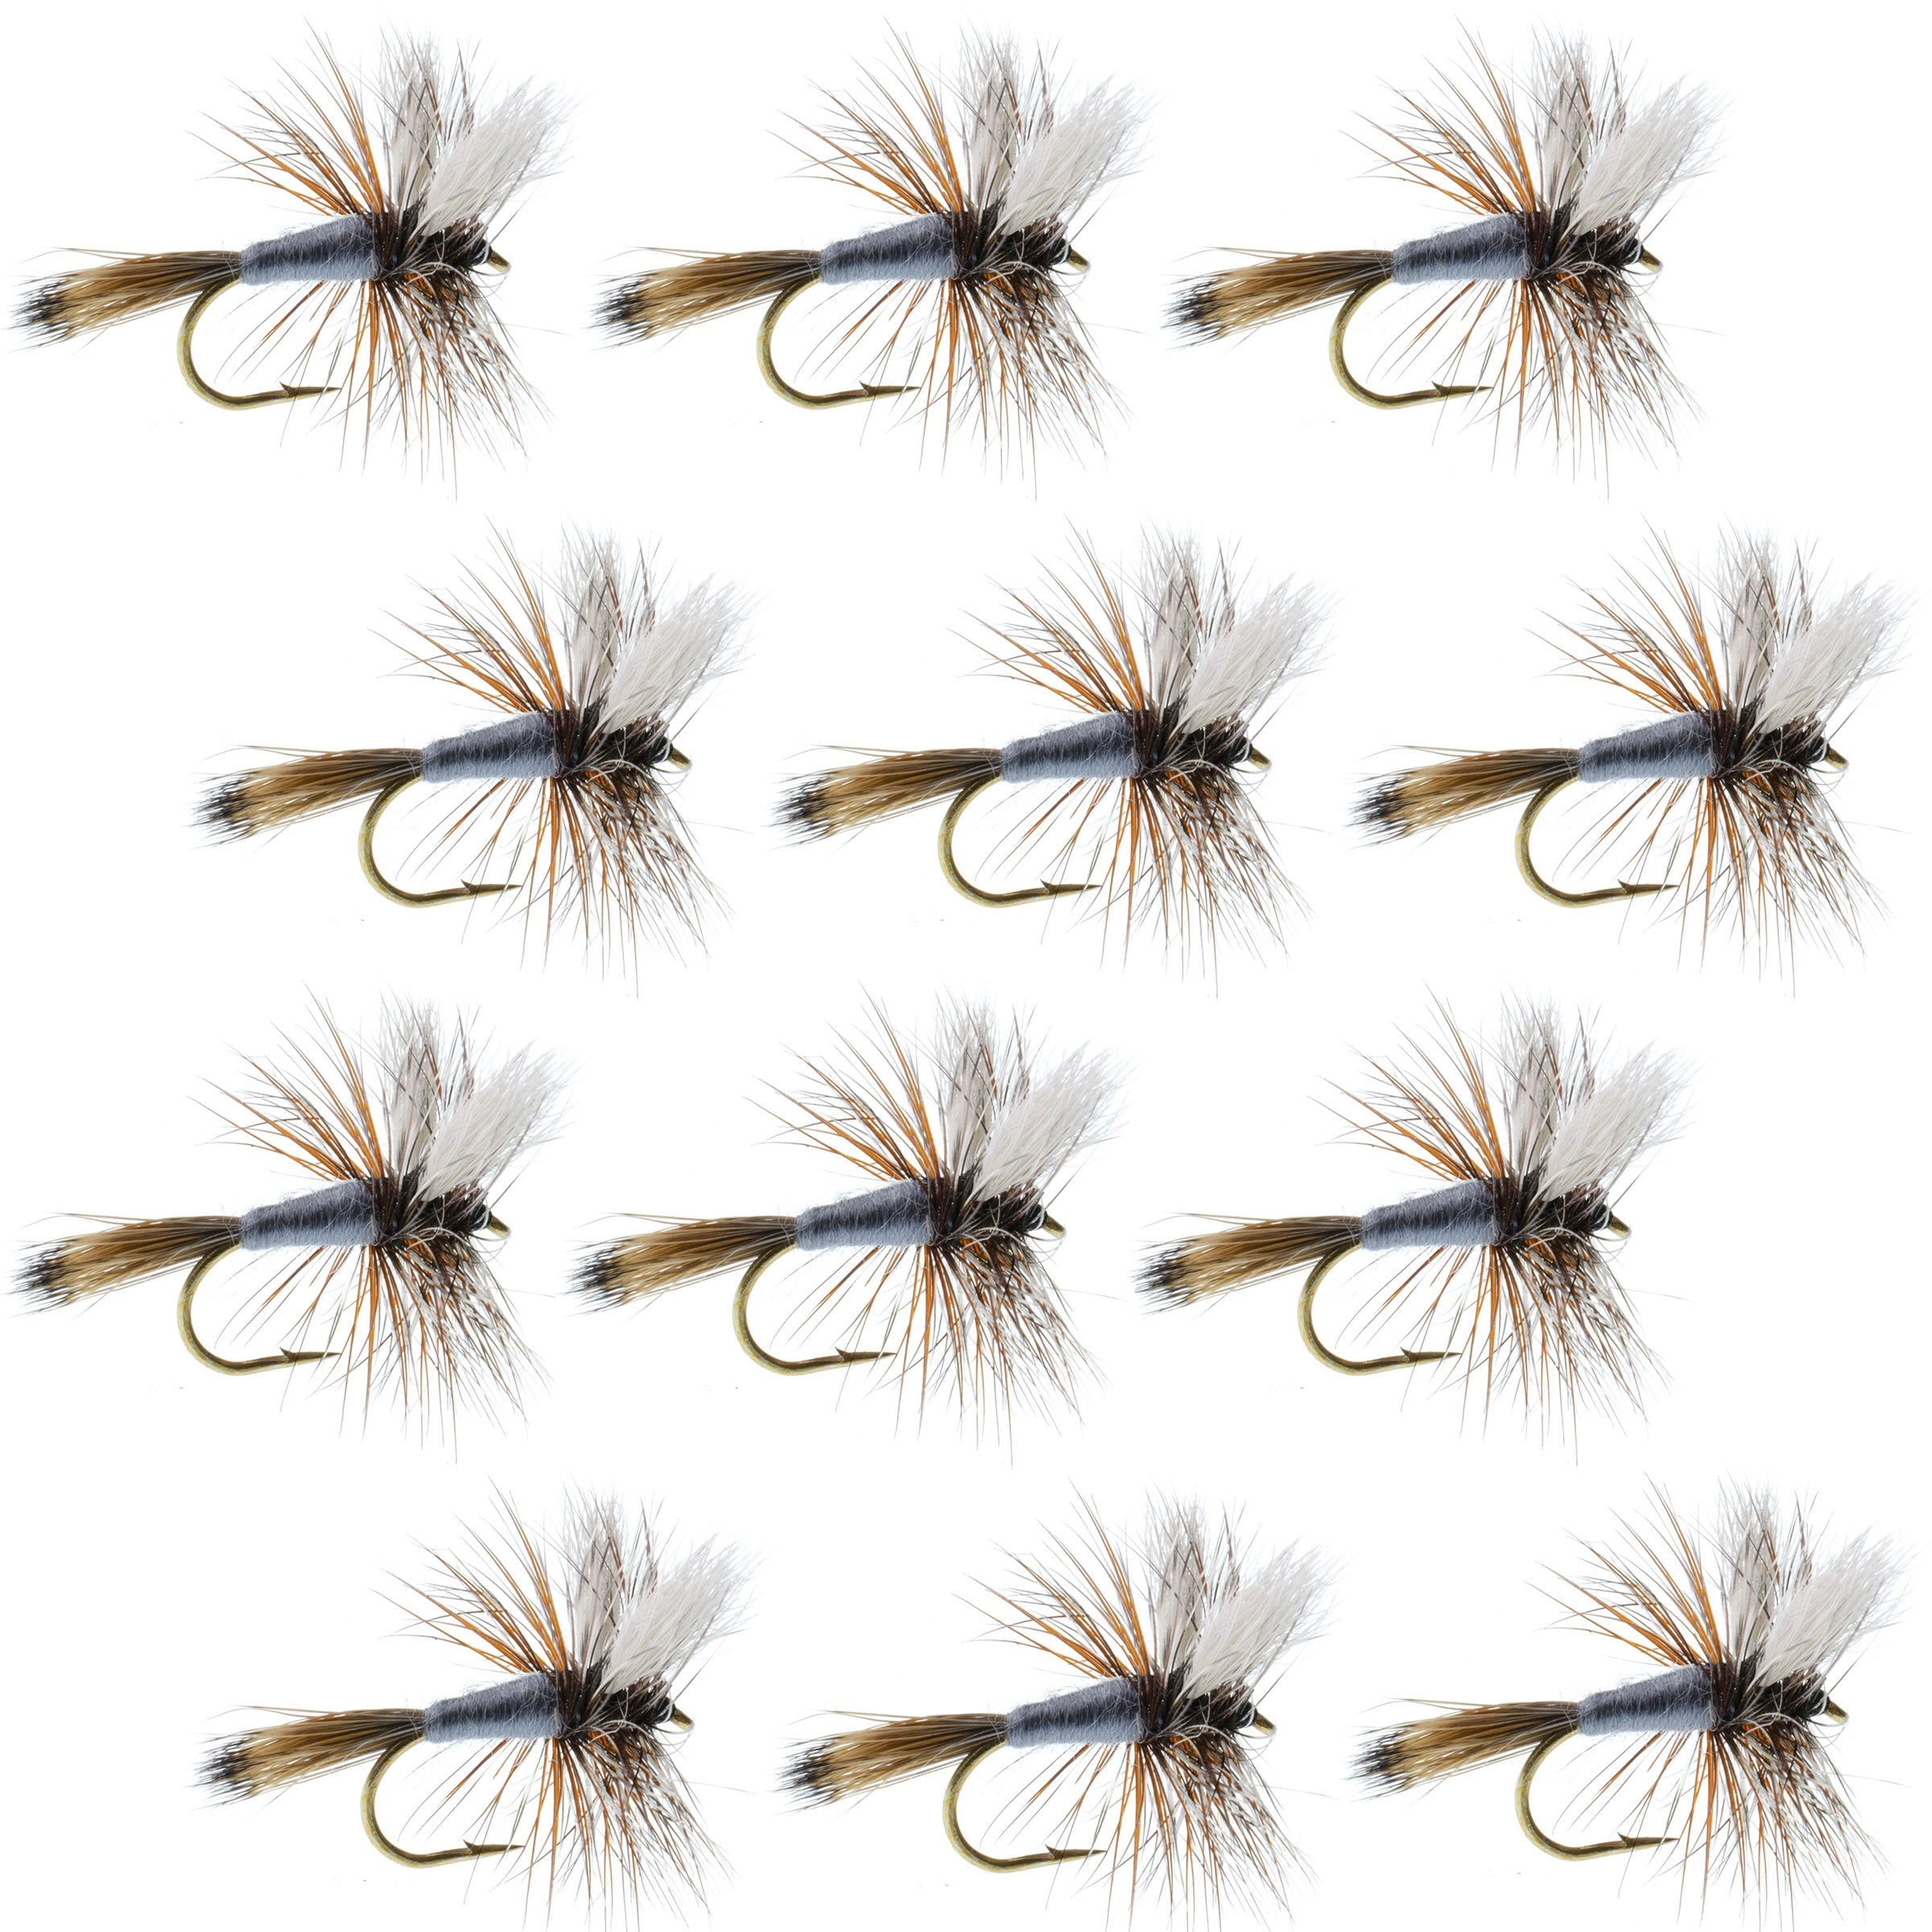 http://theflyfishingplace.com/cdn/shop/files/Adams-Wulff-Set-of-12-Dry-Fly-Fishing-Flies_67699b40-5072-4667-9578-5c818d59c9a8.jpg?v=1705526088